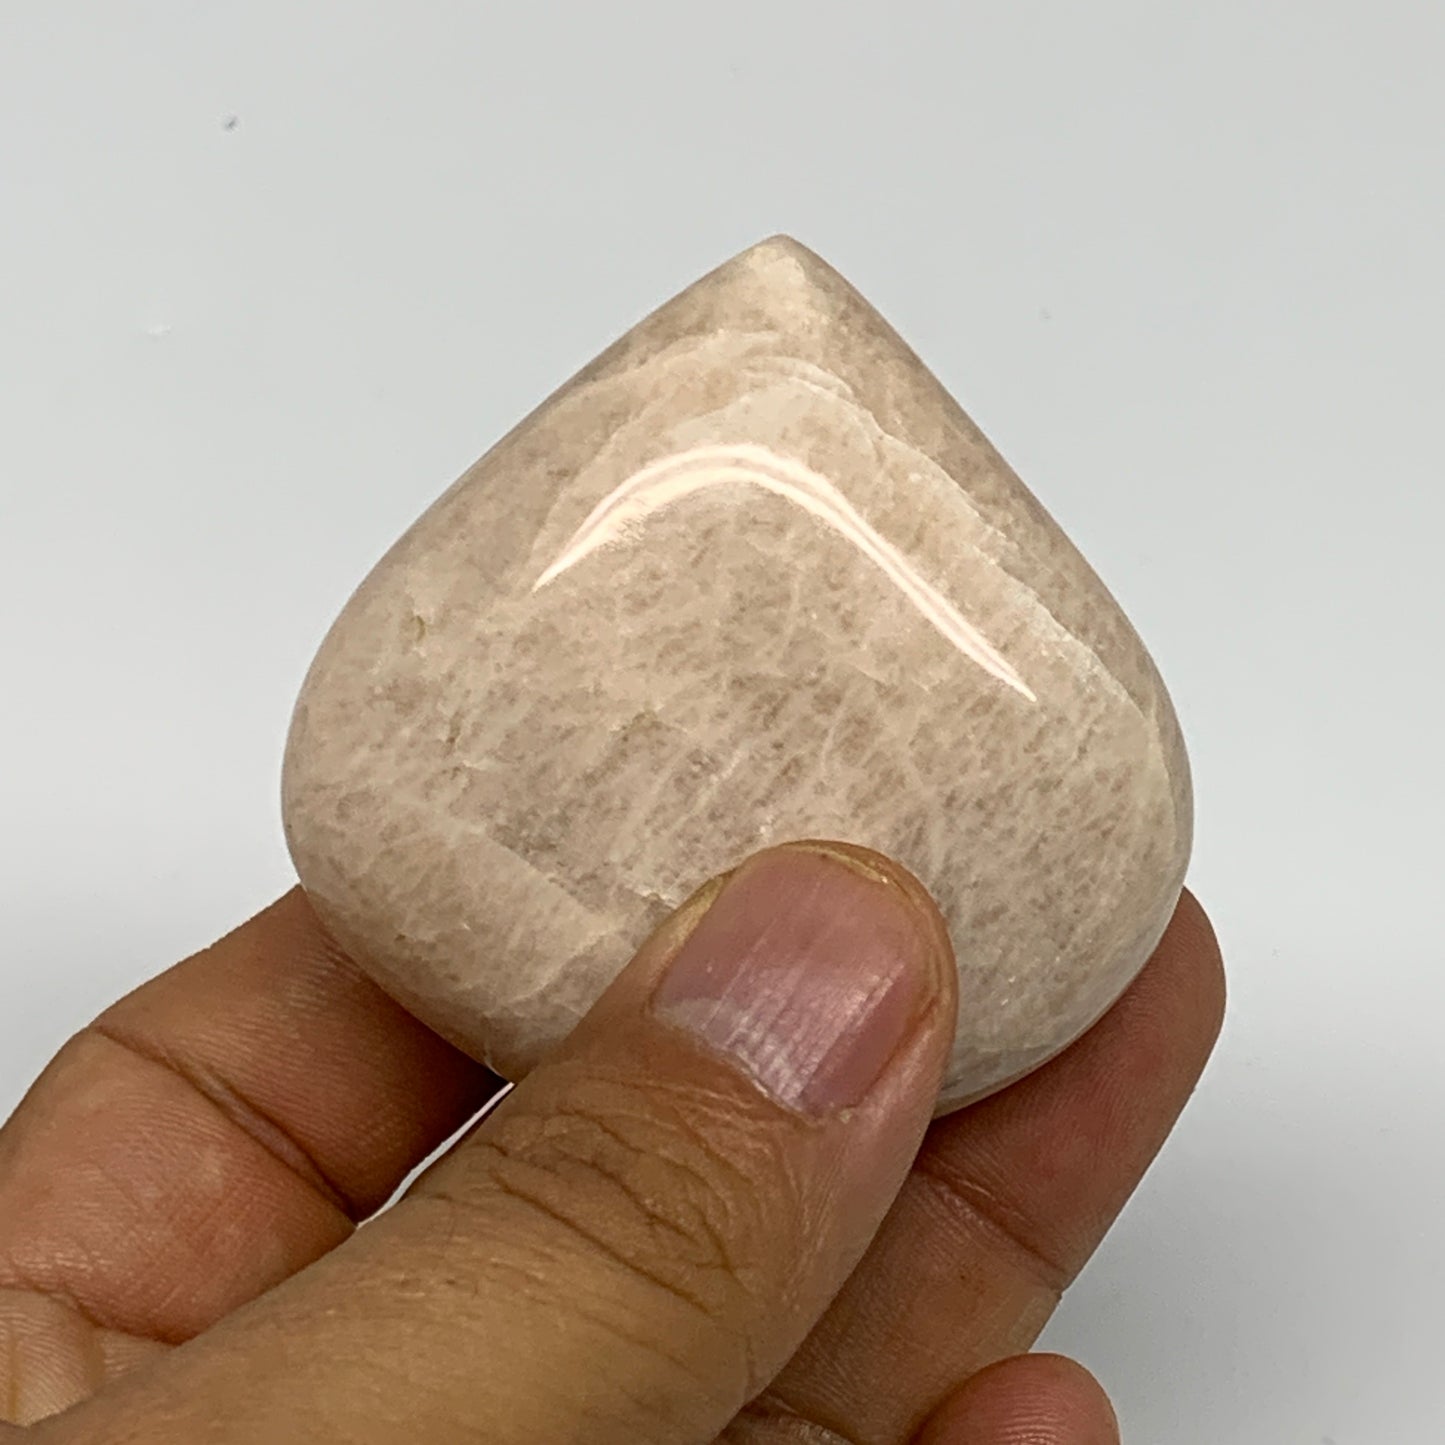 80.1g, 2"x2.1"x0.9", Peach Moonstone Heart Crystal Polished Gemstone, B28105